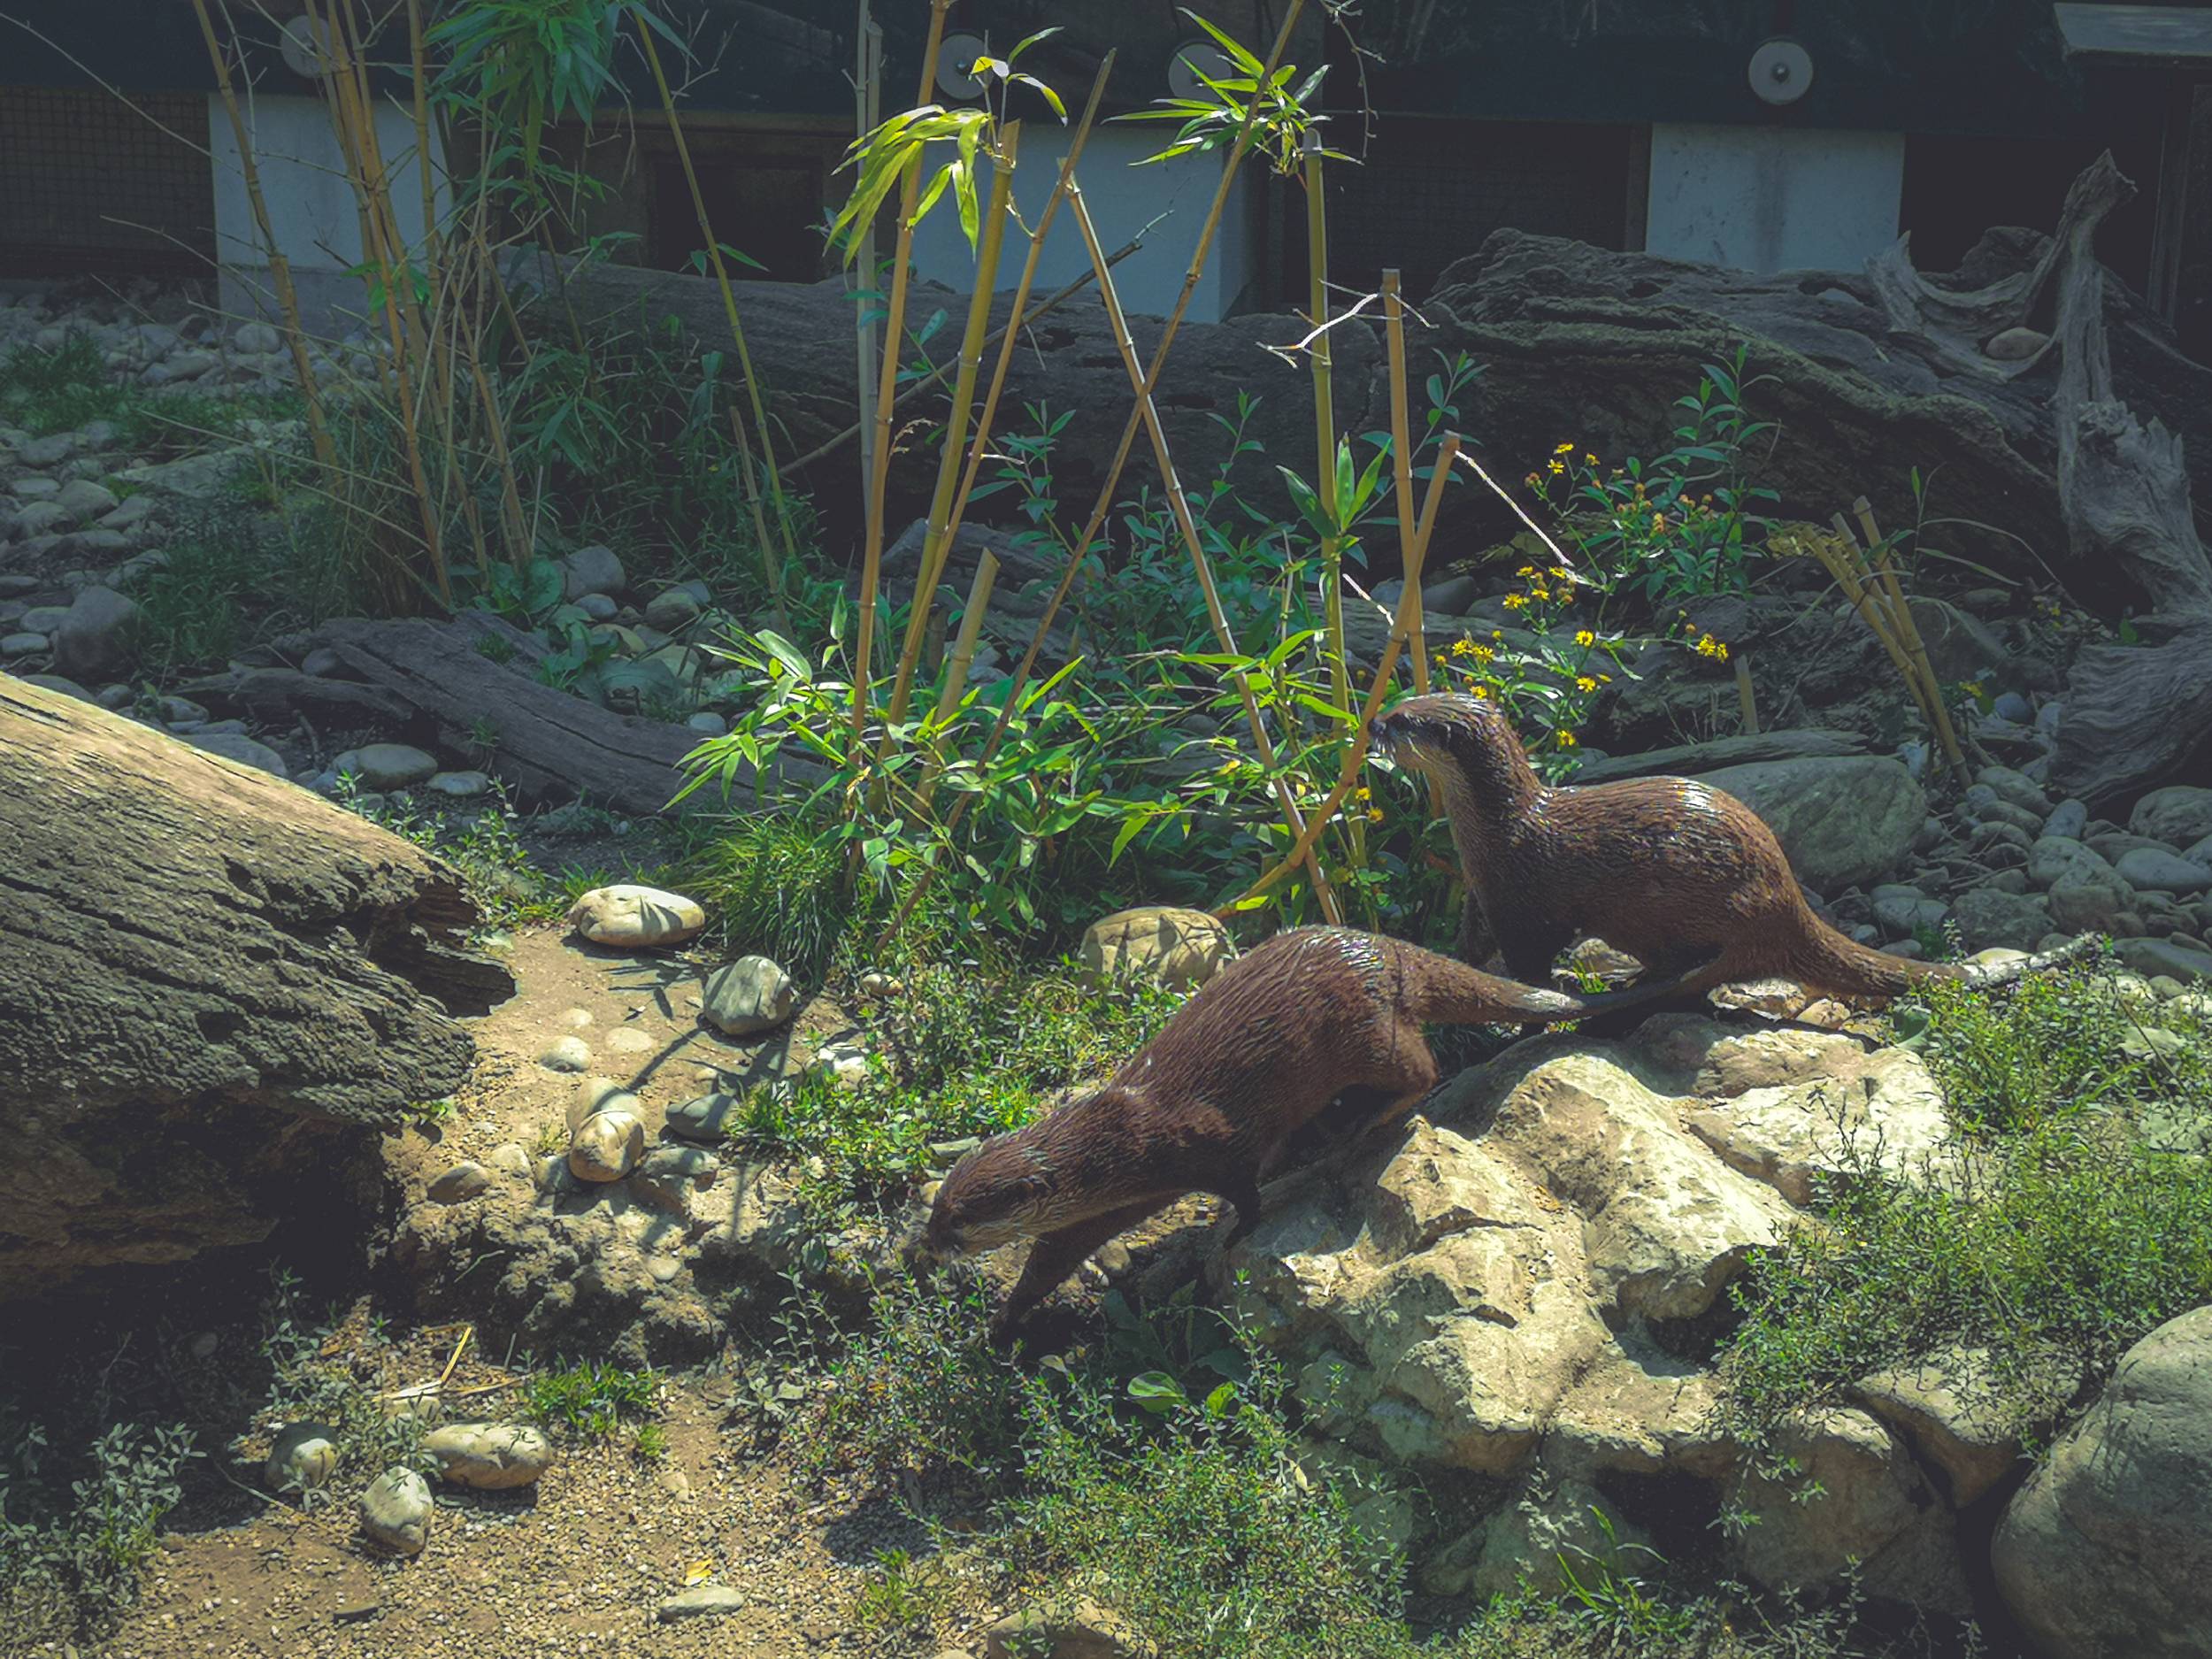 Two otters in Schönbrunn Zoo, Vienna